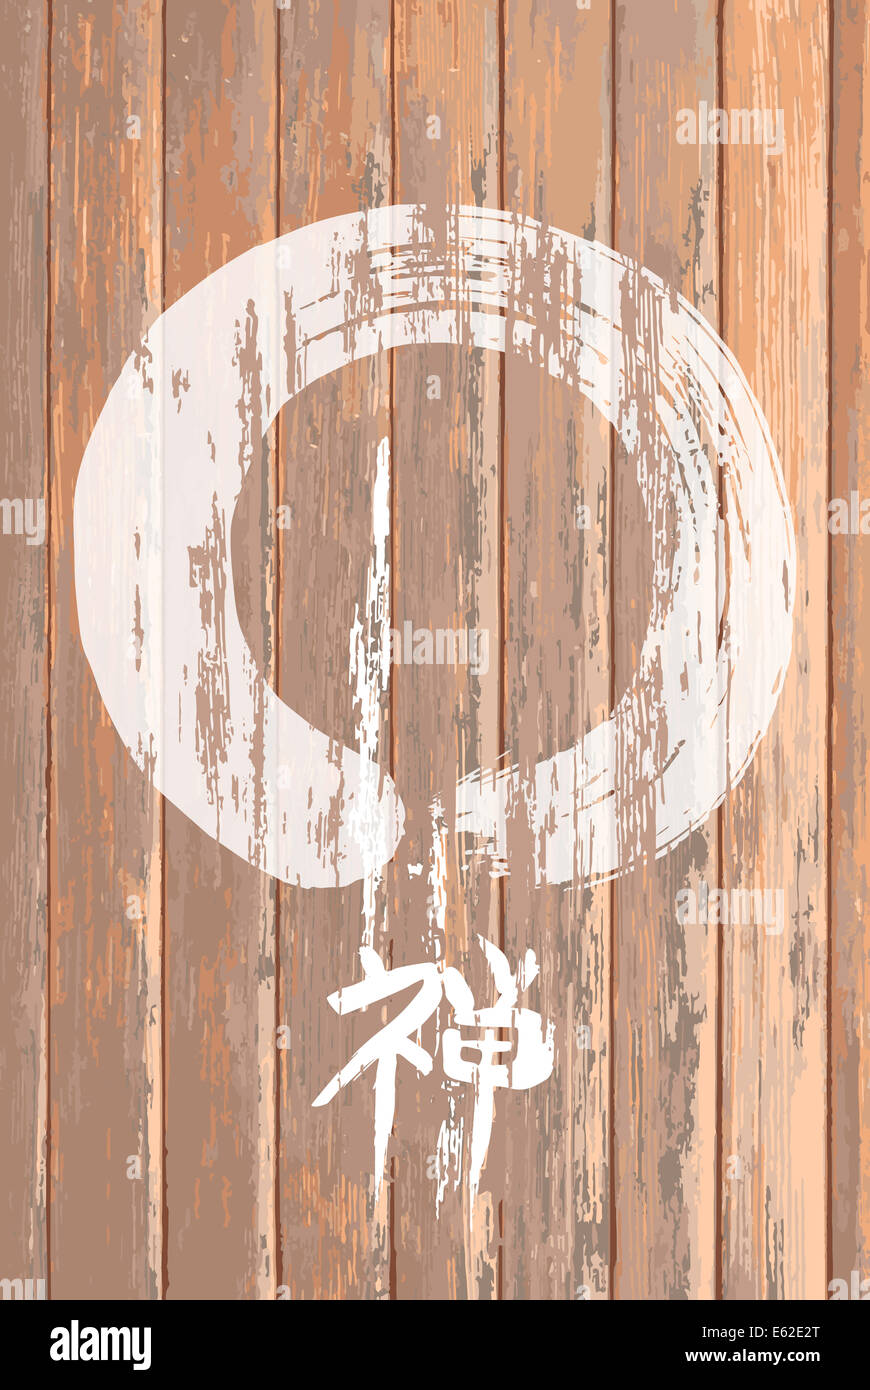 Illustration avec le cercle Zen Enso bois grunge texture background. Fichier vectoriel EPS10 organisé en couches pour l'édition facile. Banque D'Images